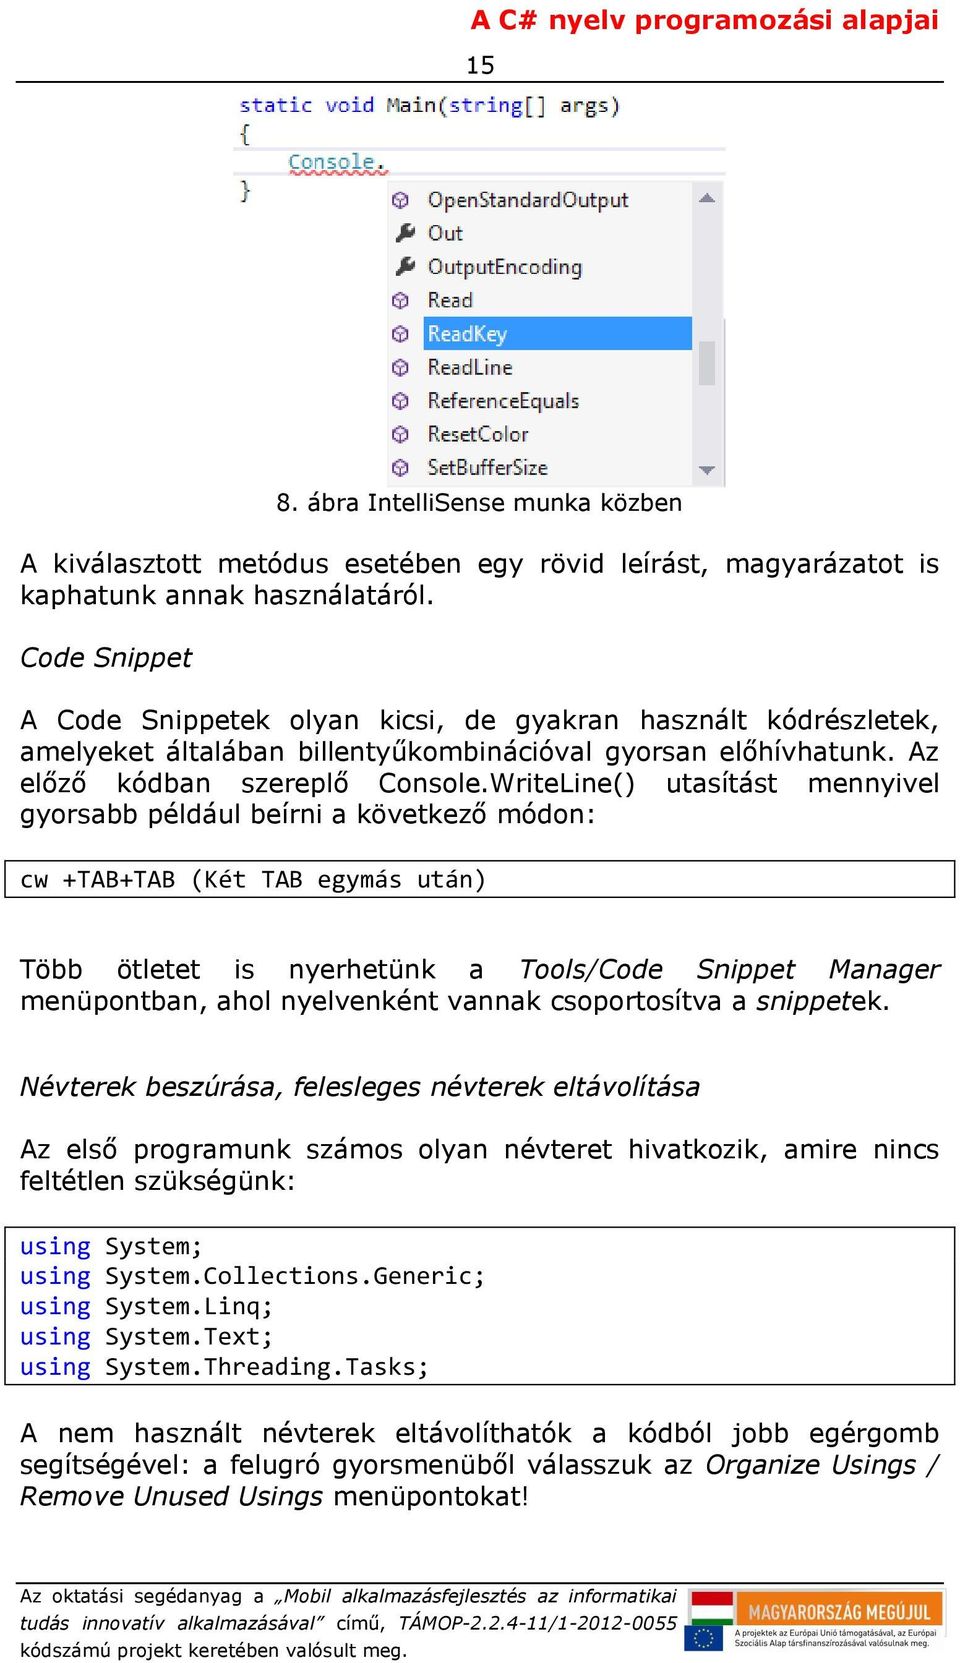 WriteLine() utasítást mennyivel gyorsabb például beírni a következő módon: cw +TAB+TAB (Két TAB egymás után) Több ötletet is nyerhetünk a Tools/Code Snippet Manager menüpontban, ahol nyelvenként